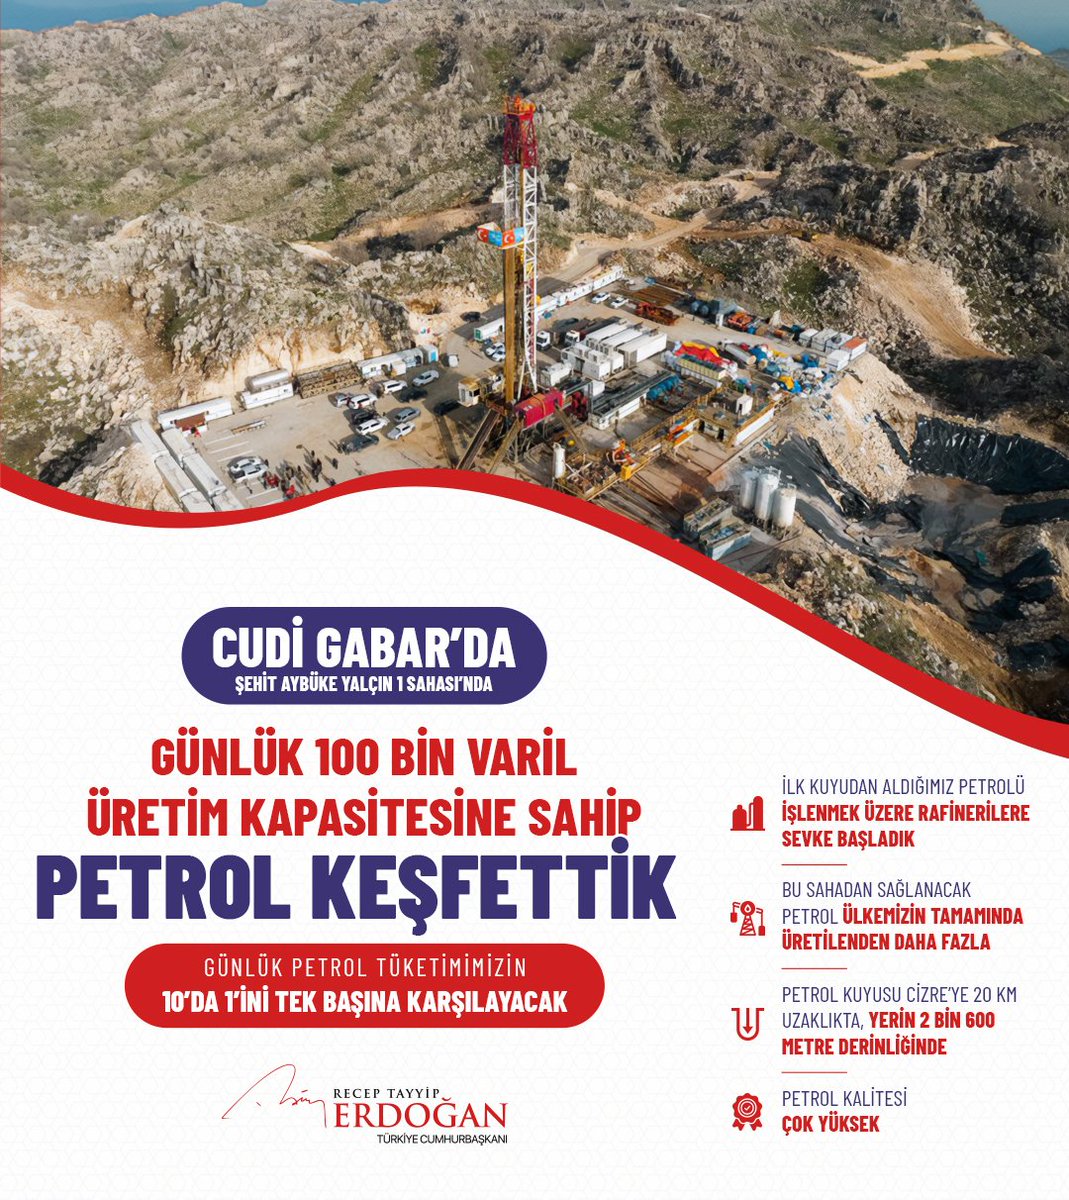 Cudi-Gabar’da günlük 100 bin varil üretim kapasitesine sahip yeni bir petrol rezervi keşfettik. Milletimize hayırlı olsun. 🇹🇷